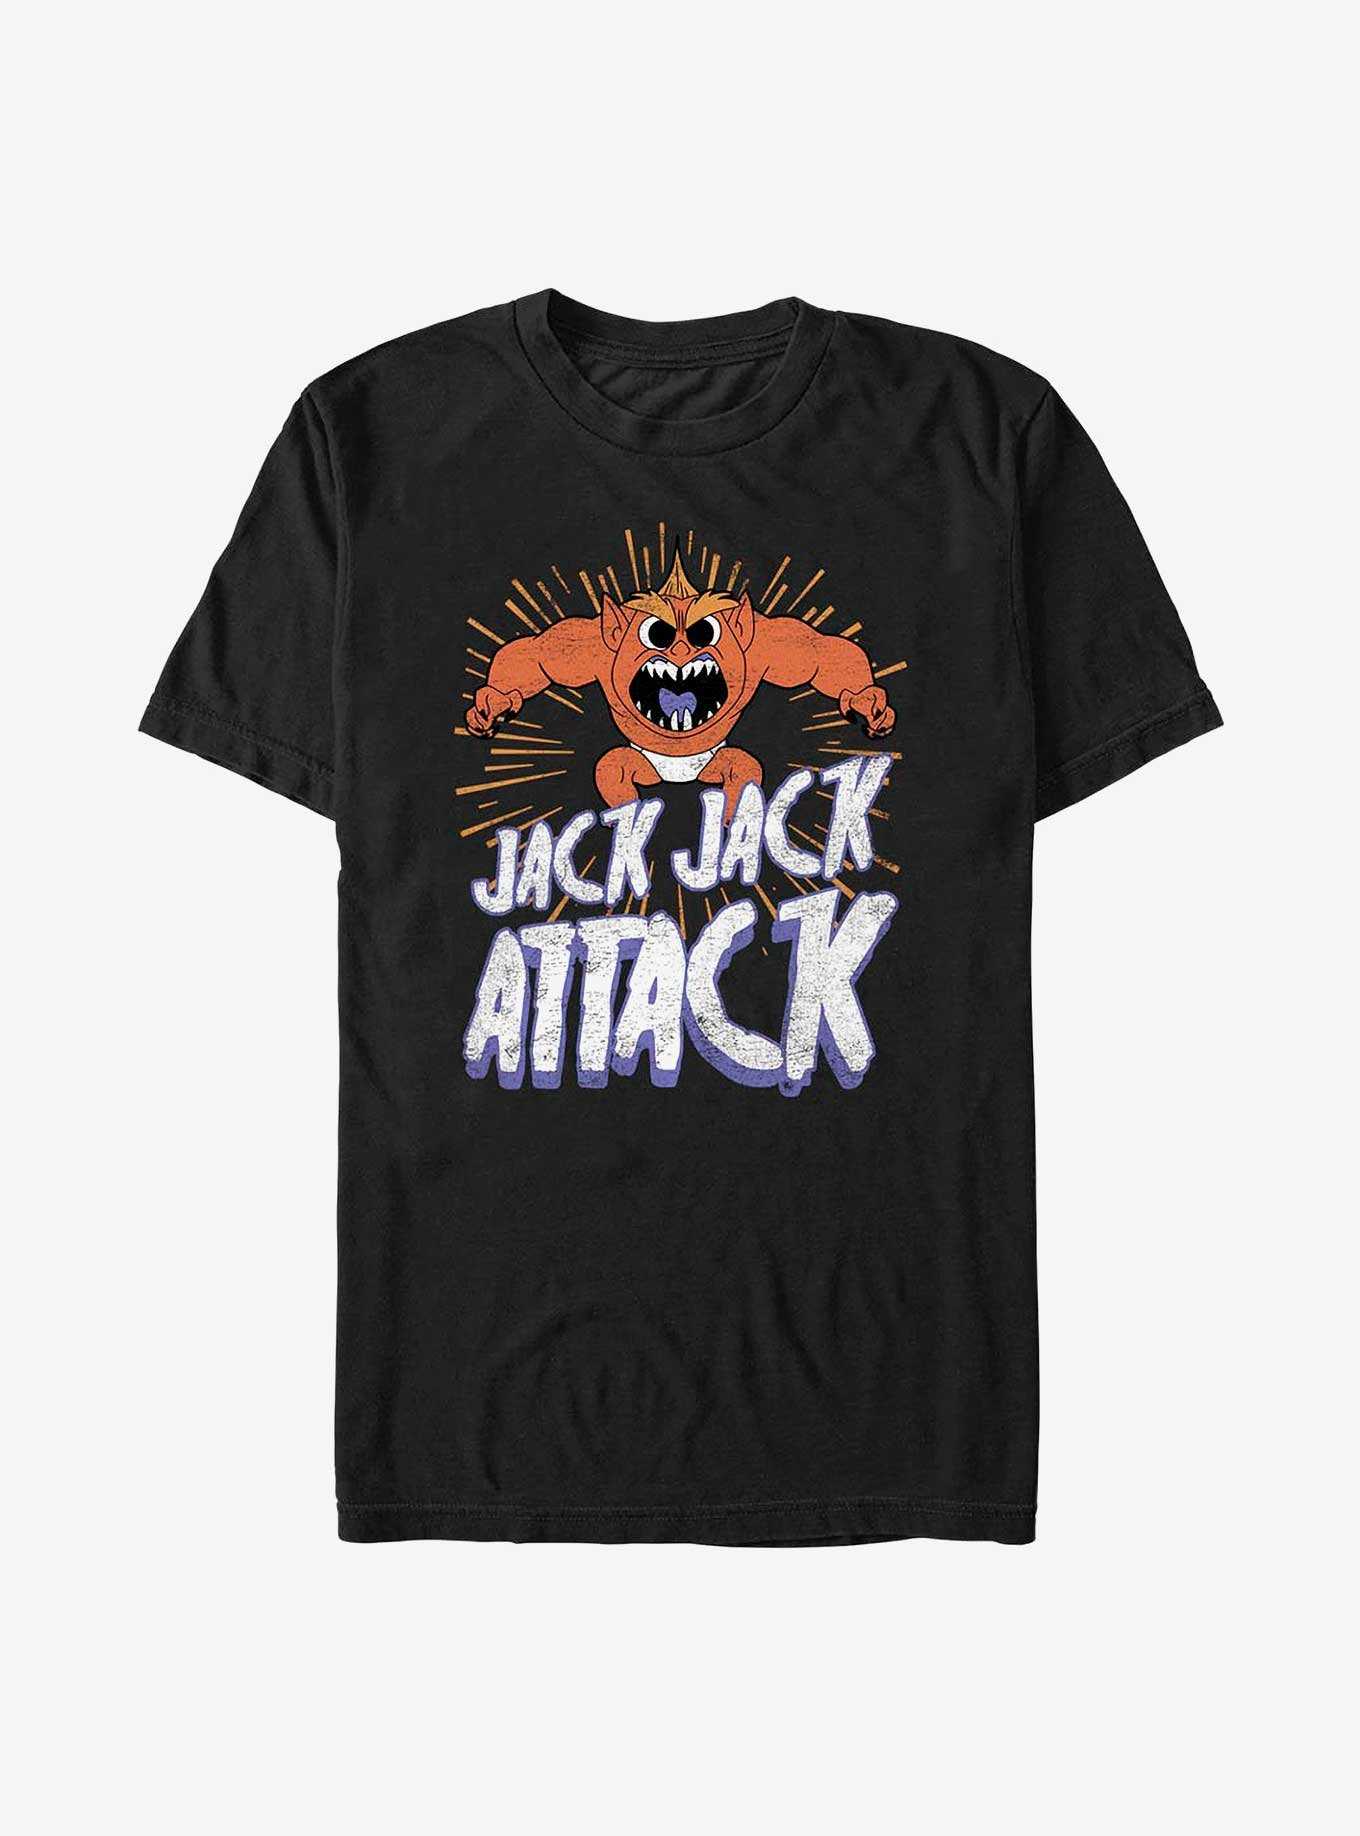 Disney The Incredibles Jack Jack Attack Horror T-Shirt, , hi-res